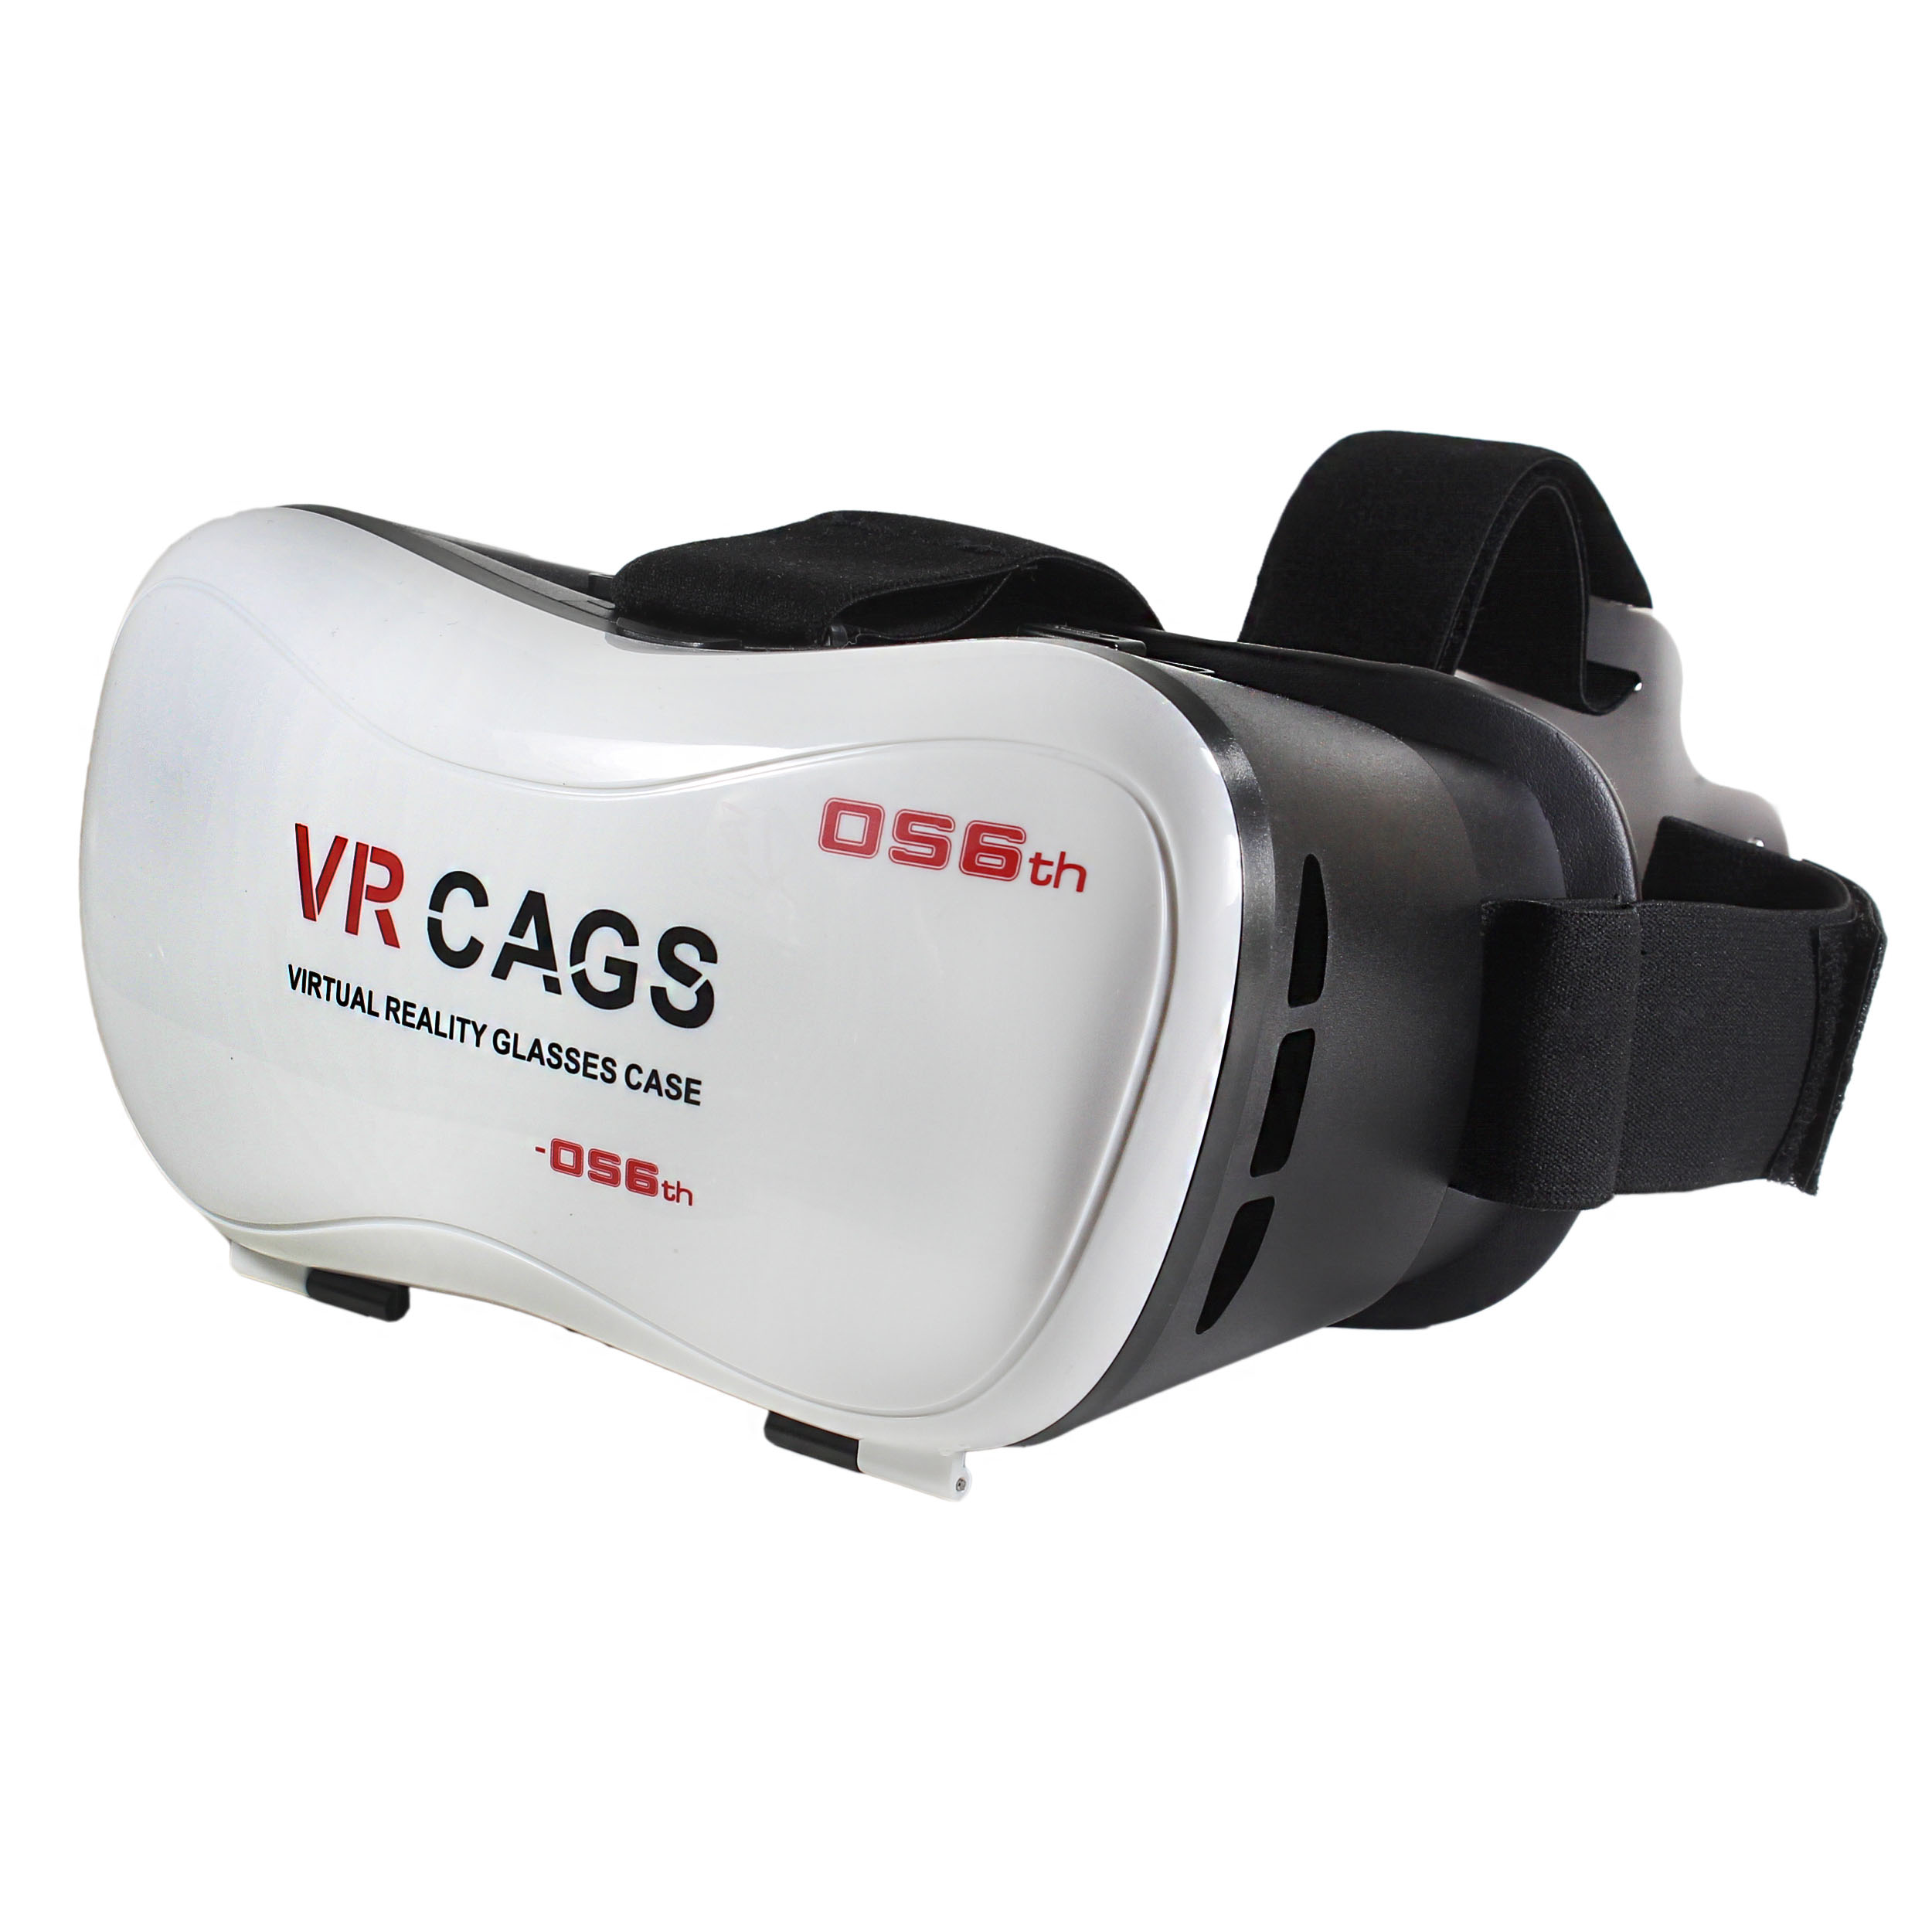 هدست واقعیت مجازی طرح VR Cags مدل 056th کد 0001